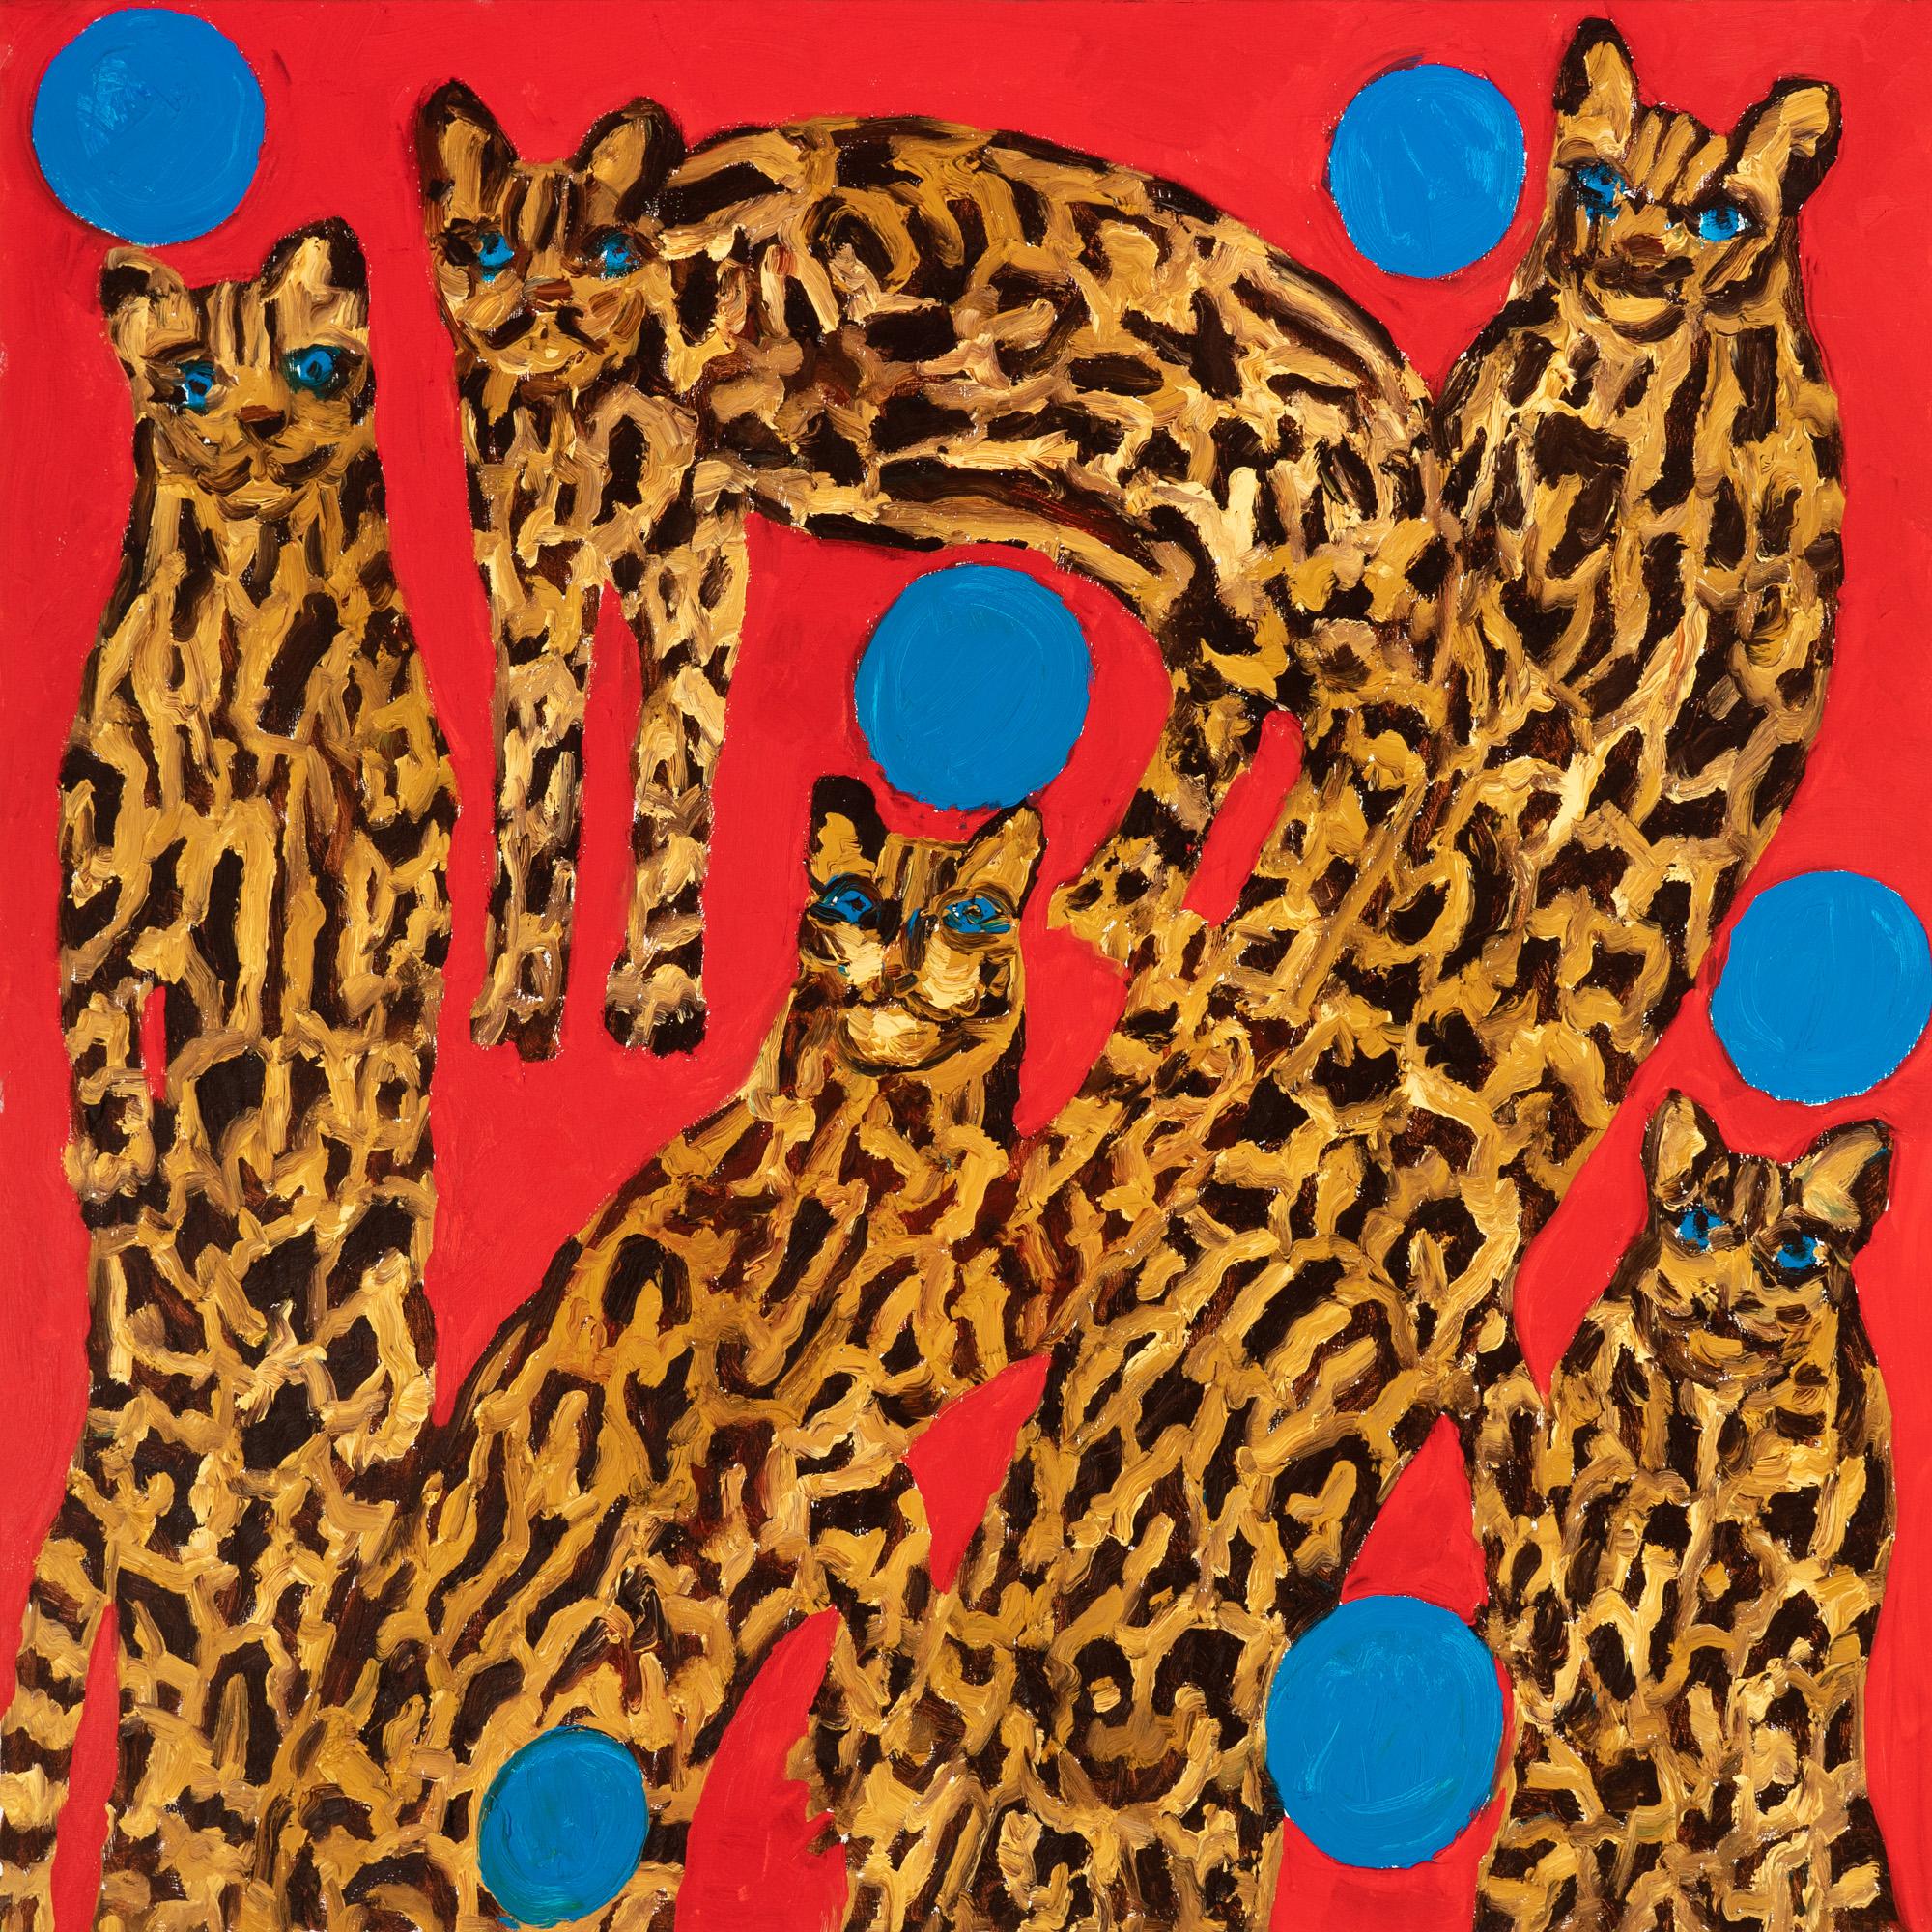 "Ozelots" ist ein ungerahmtes Ölgemälde von Hunt Slonem, das eine Gruppe von Ozelots mit 6 blauen schwebenden Kugeln vor einem roten Hintergrund zeigt. Die ausdrucksstarken Pinselstriche des Künstlers und die leuchtenden Primärfarben rufen einen